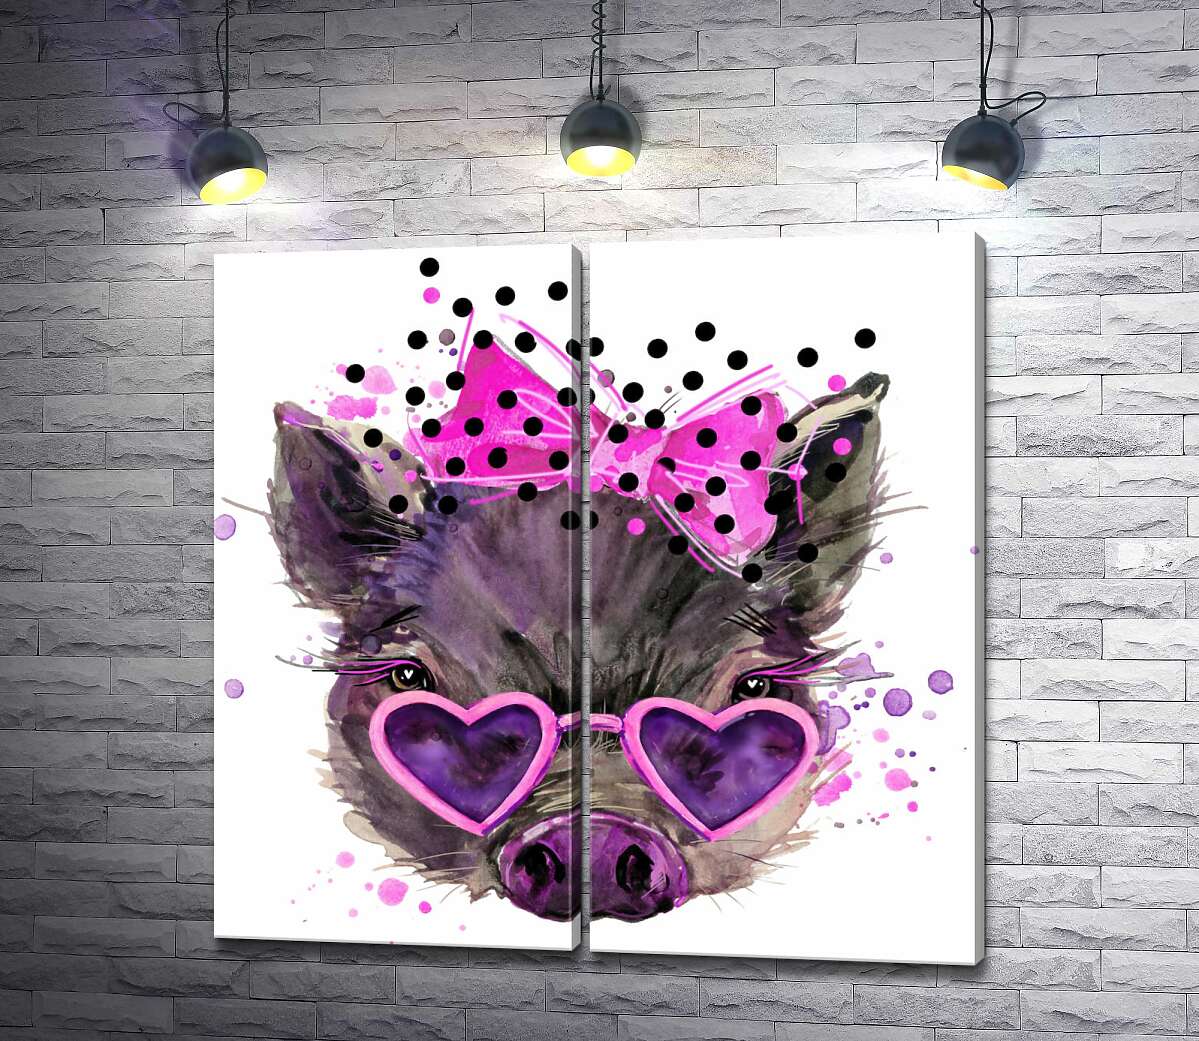 модульная картина Гламурная свинка в очках-сердечках с розовым бантиком на макушке